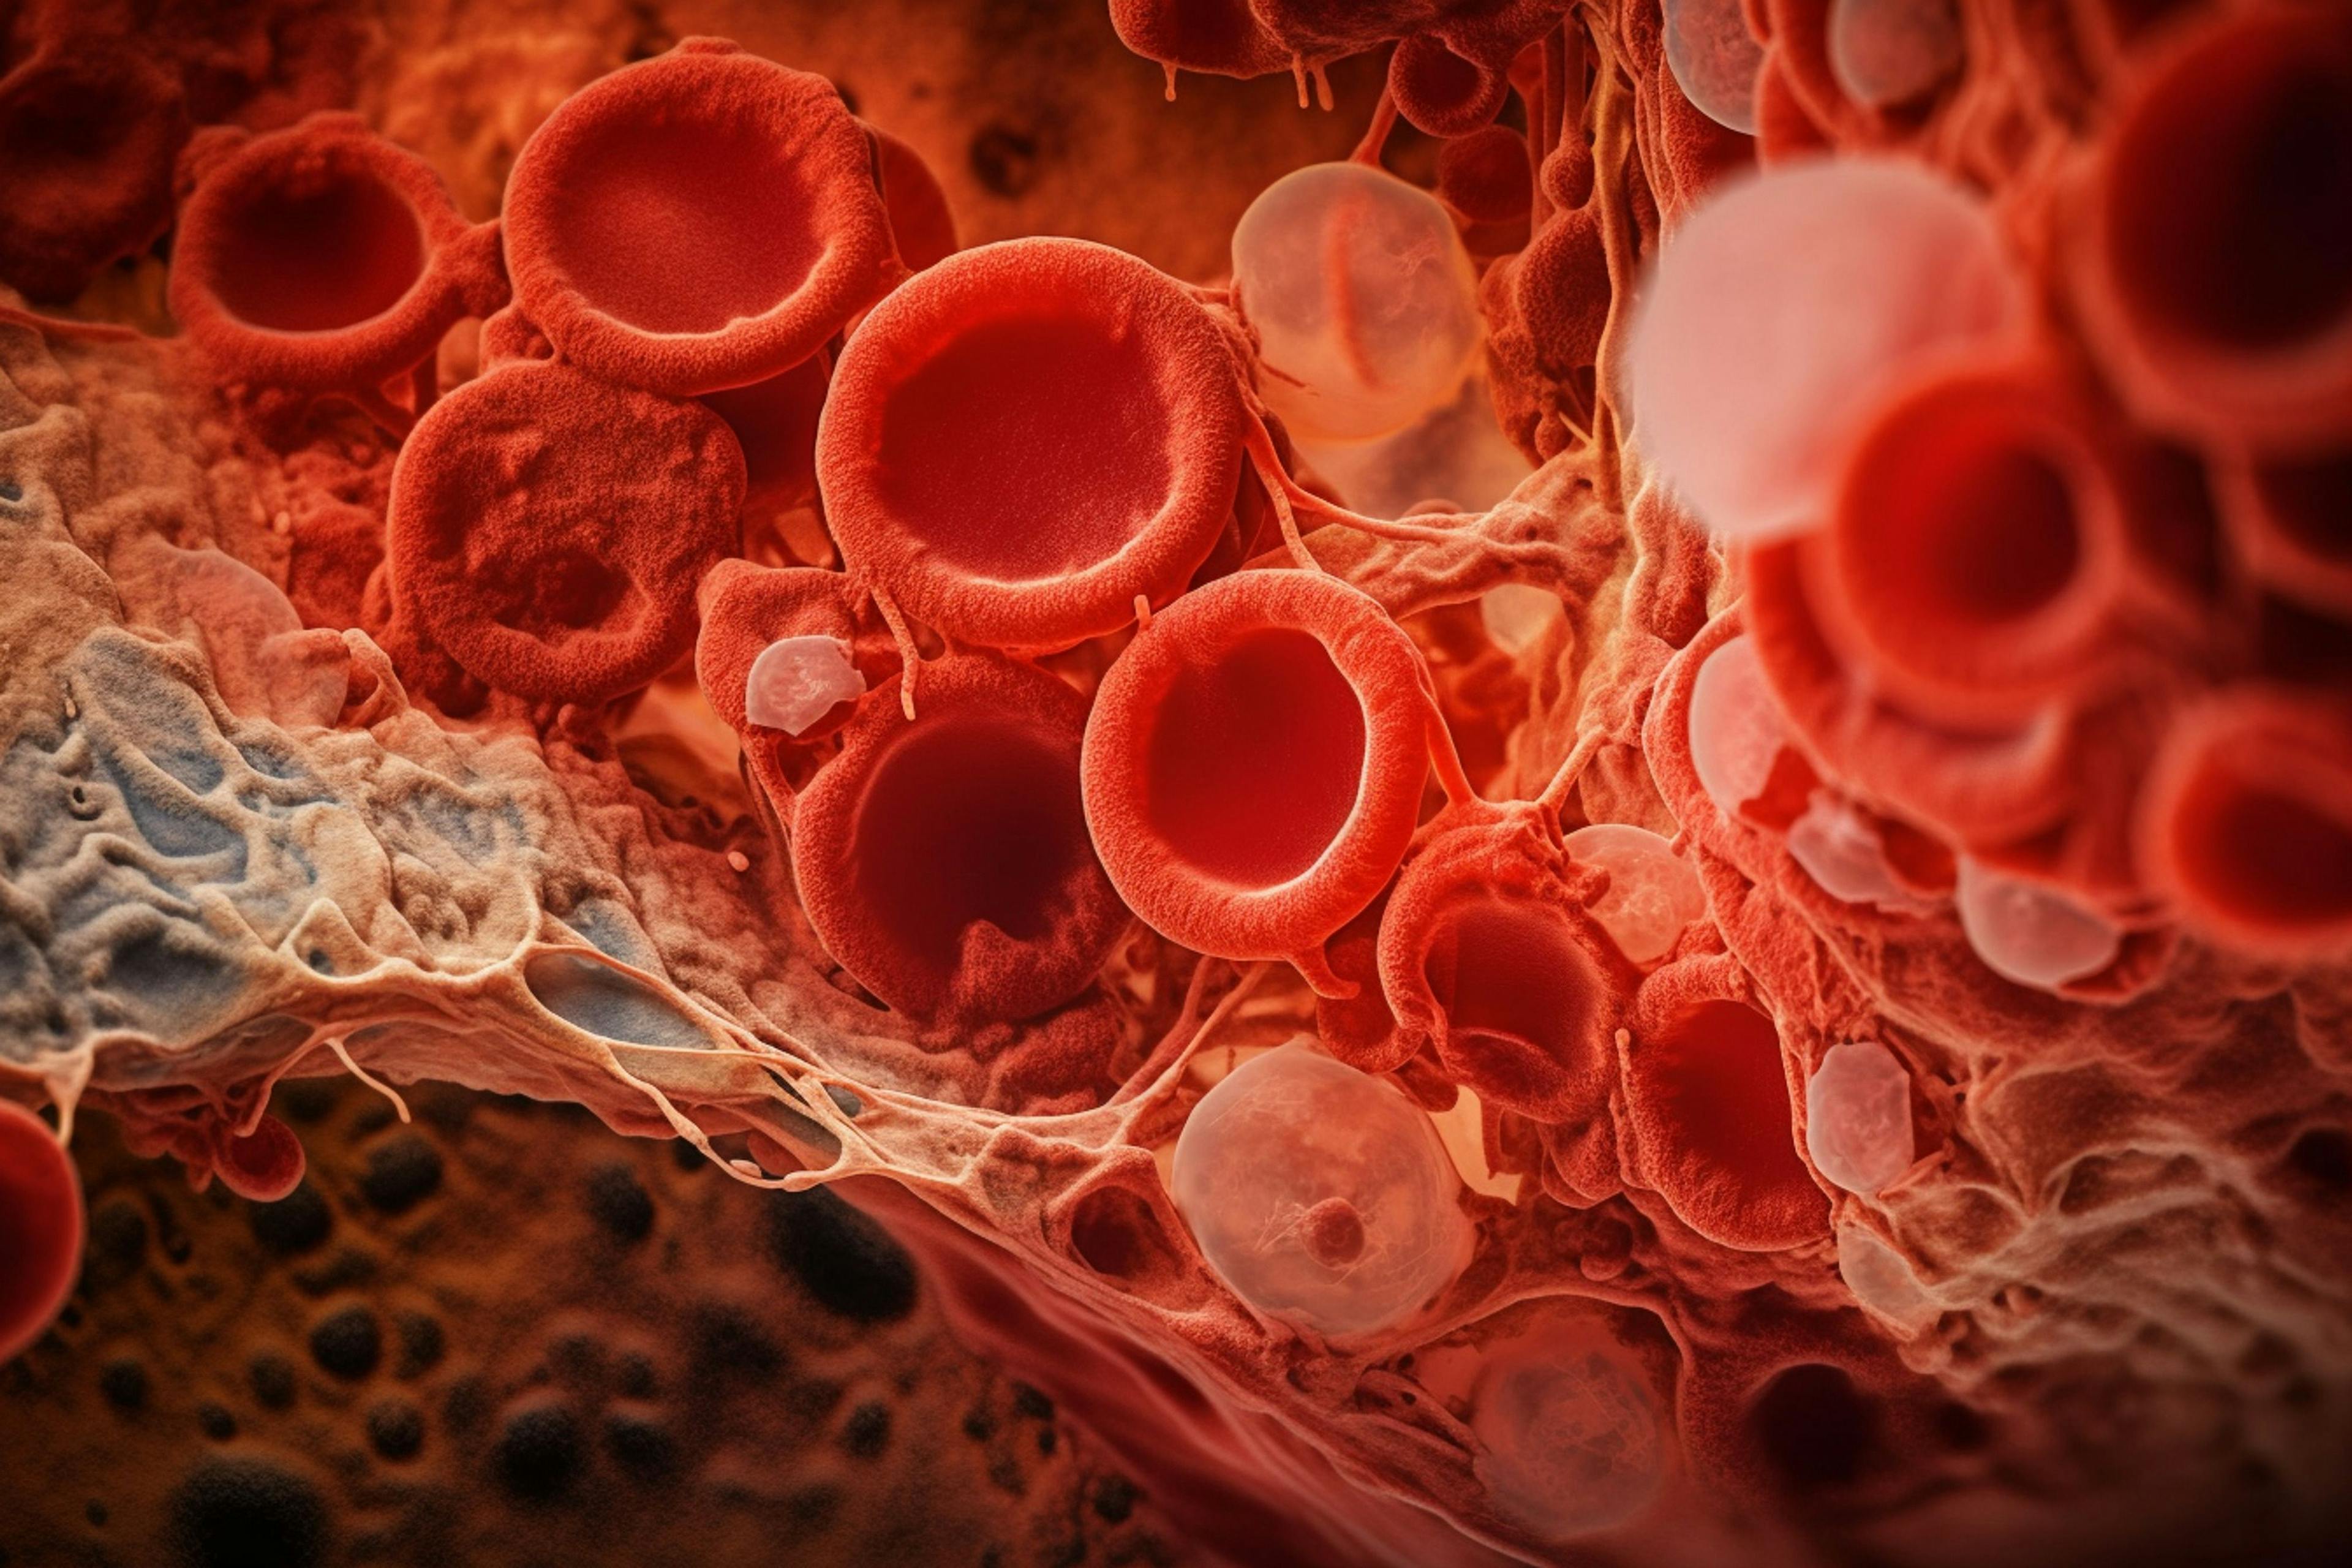 Blood cells © Катерина Євтехова - stock.adobe.com